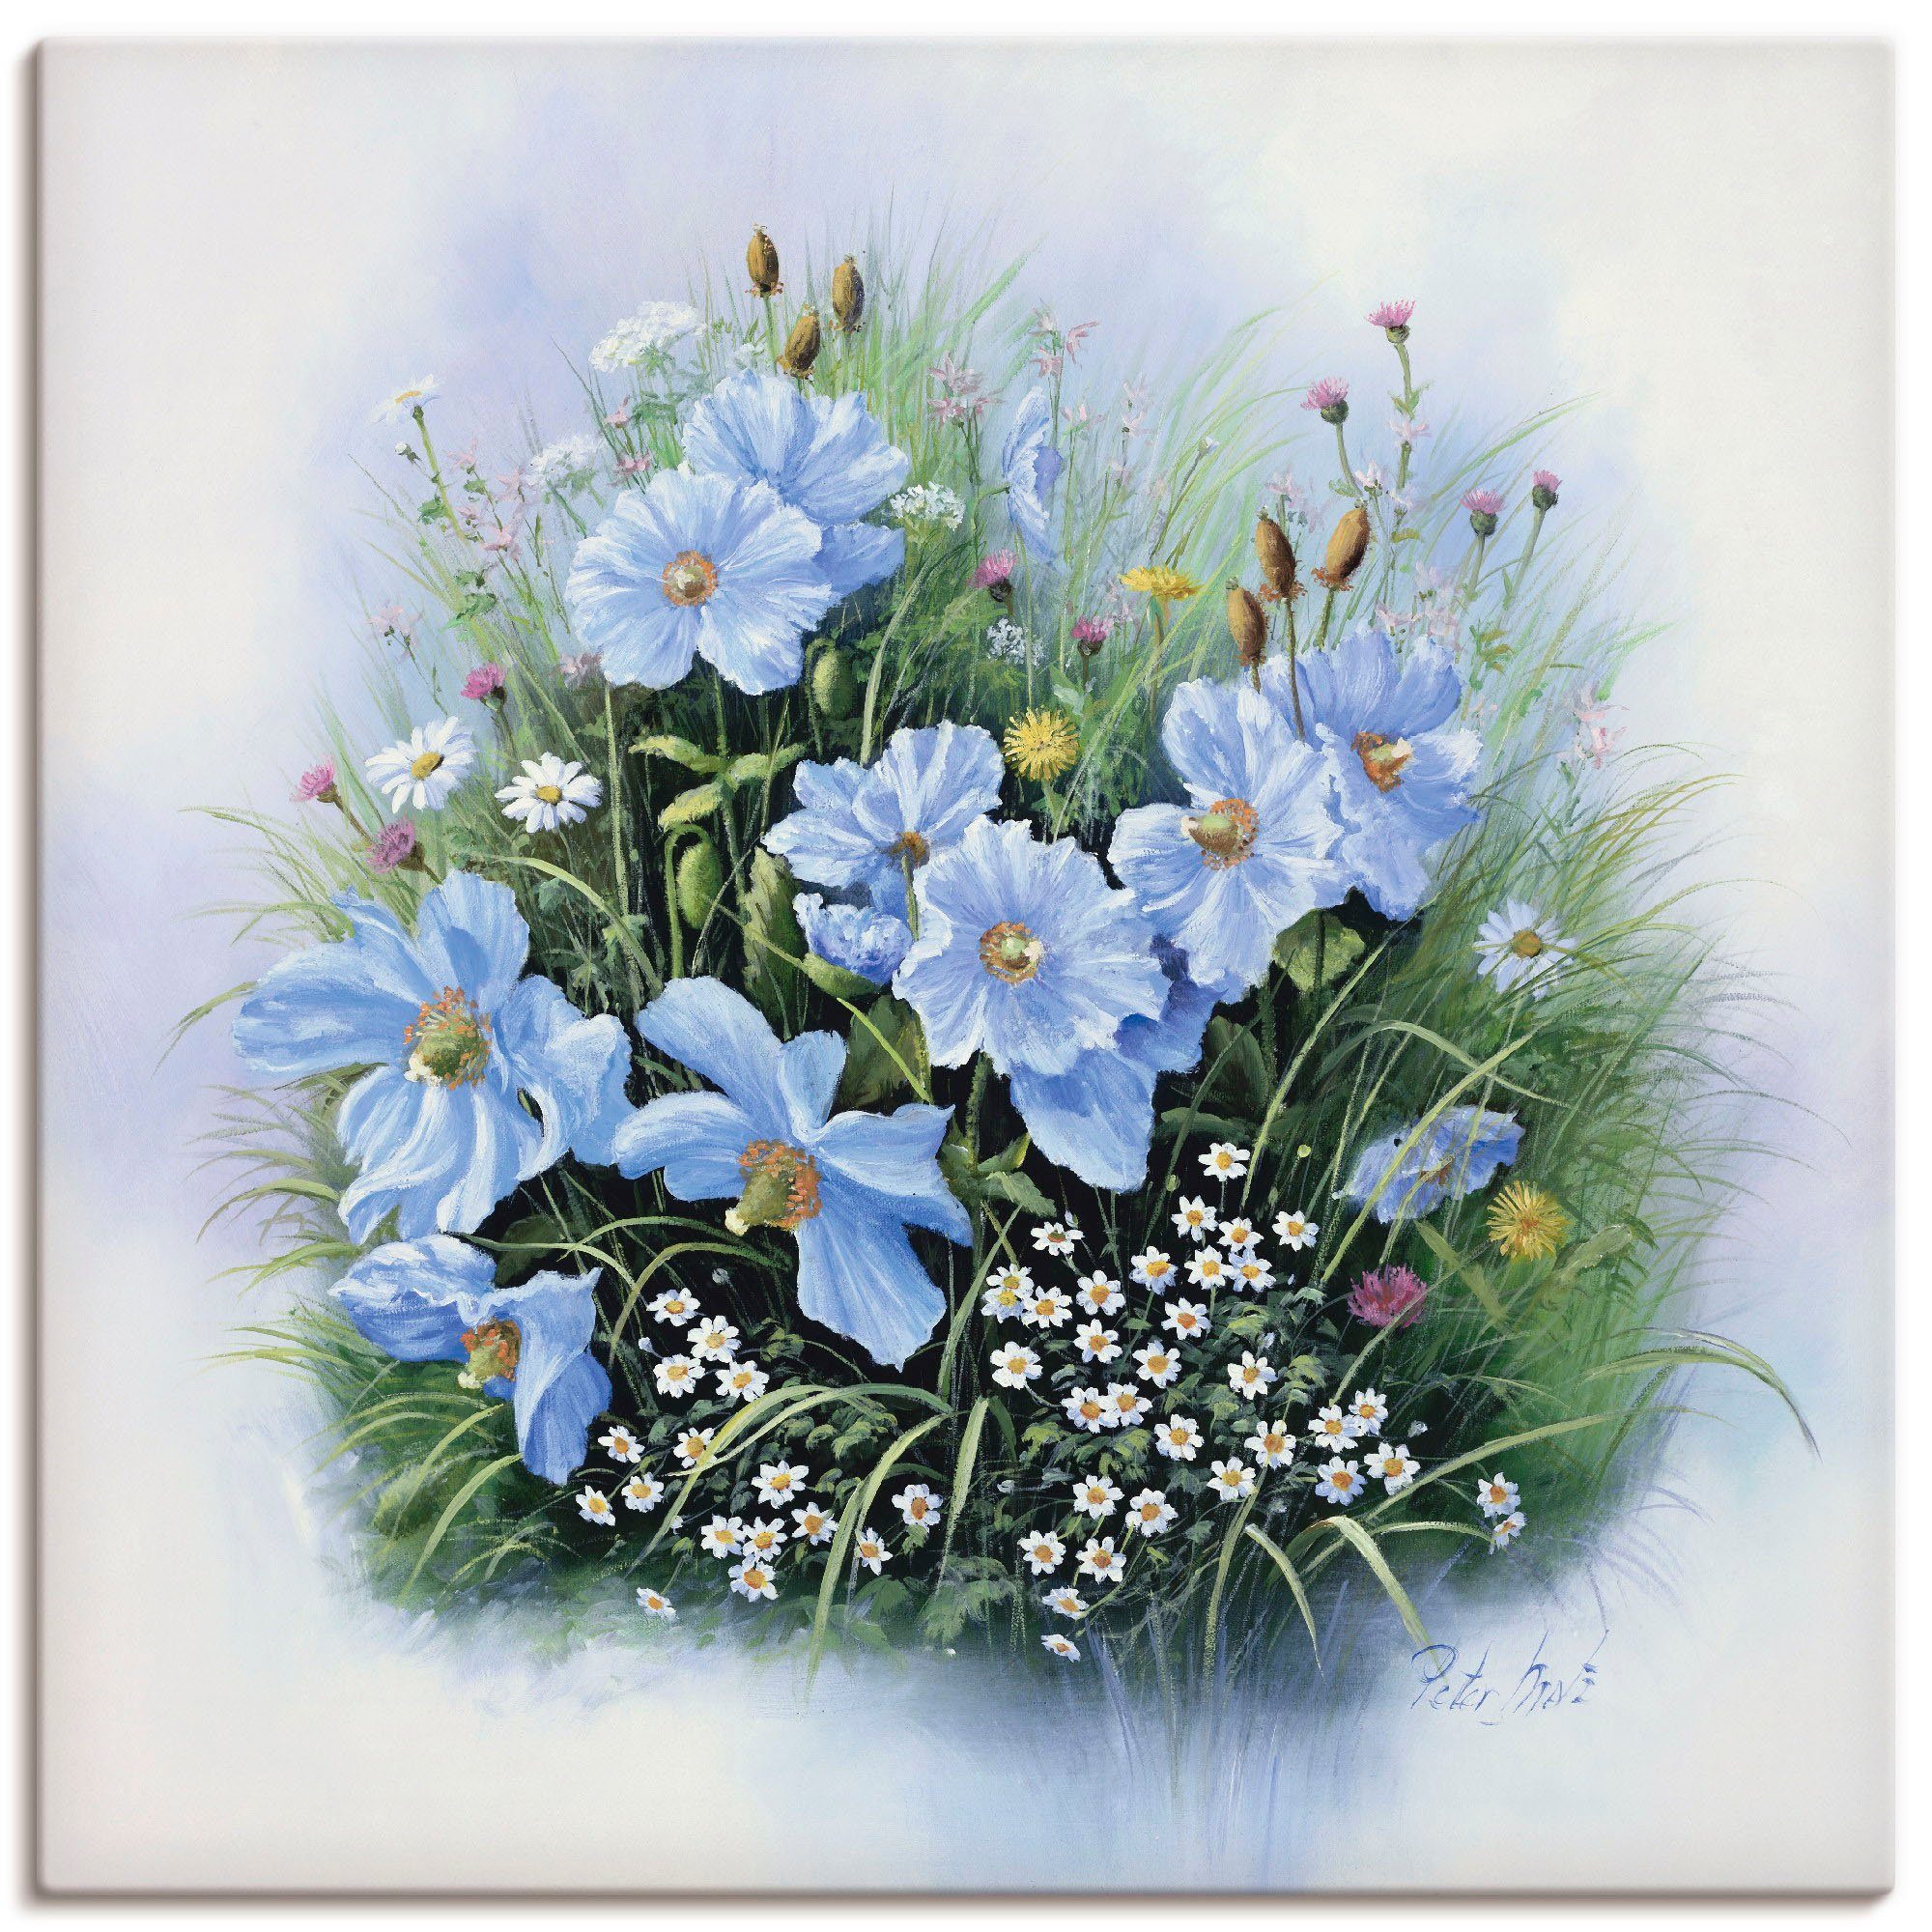 Artland Artprint Blauwe bloemen in vele afmetingen & productsoorten -artprint op linnen, poster, muursticker / wandfolie ook geschikt voor de badkamer (1 stuk)